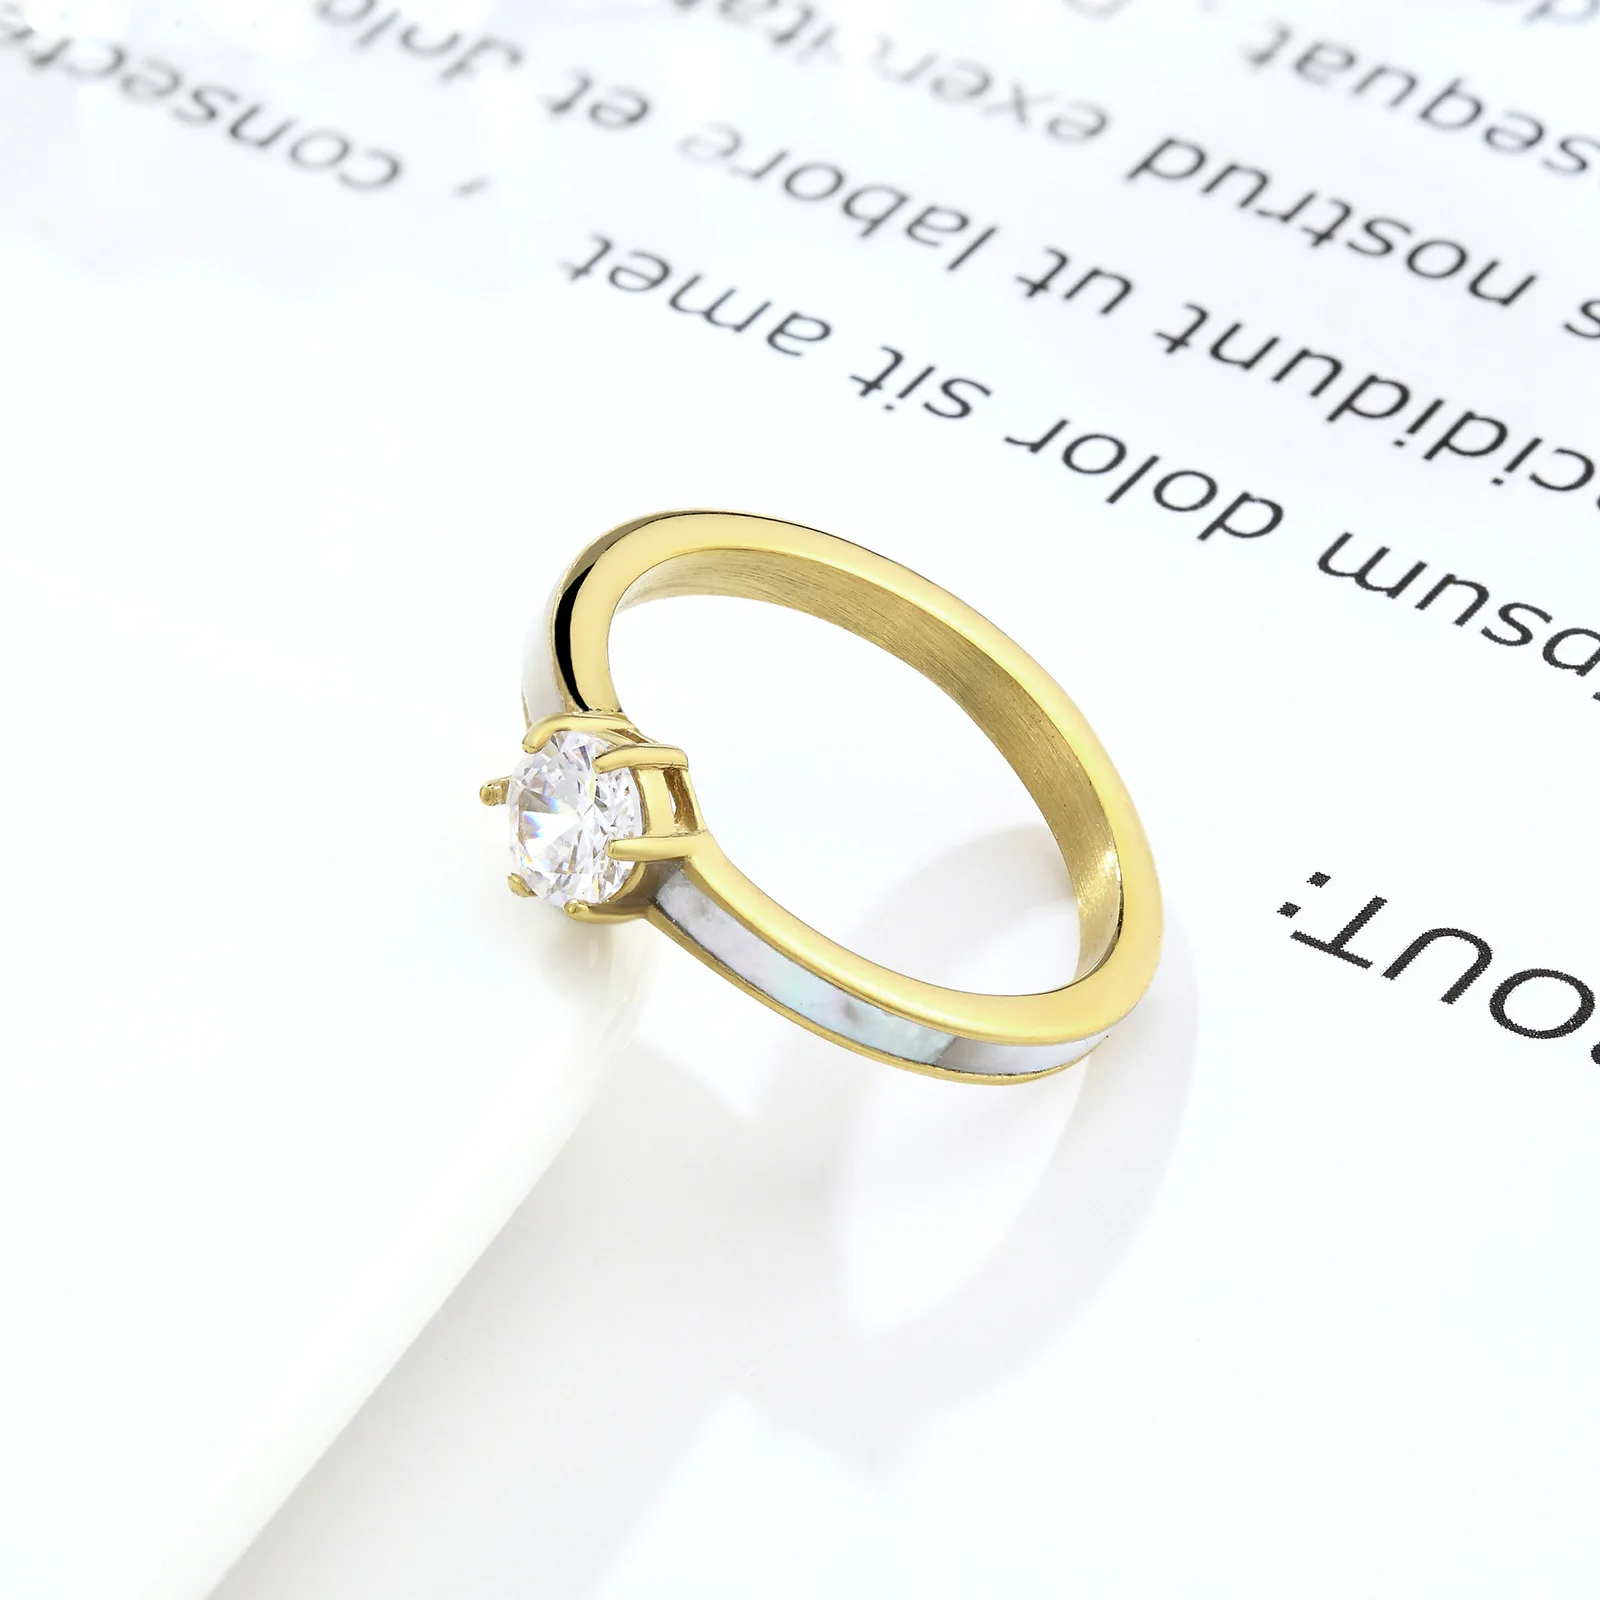 יוקרה קריסטל טיטניום פלדה נשים טבעת לבן ים פגז קריסטל טבעת של הזוג טבעת האהבה תכשיט מתנה - 3